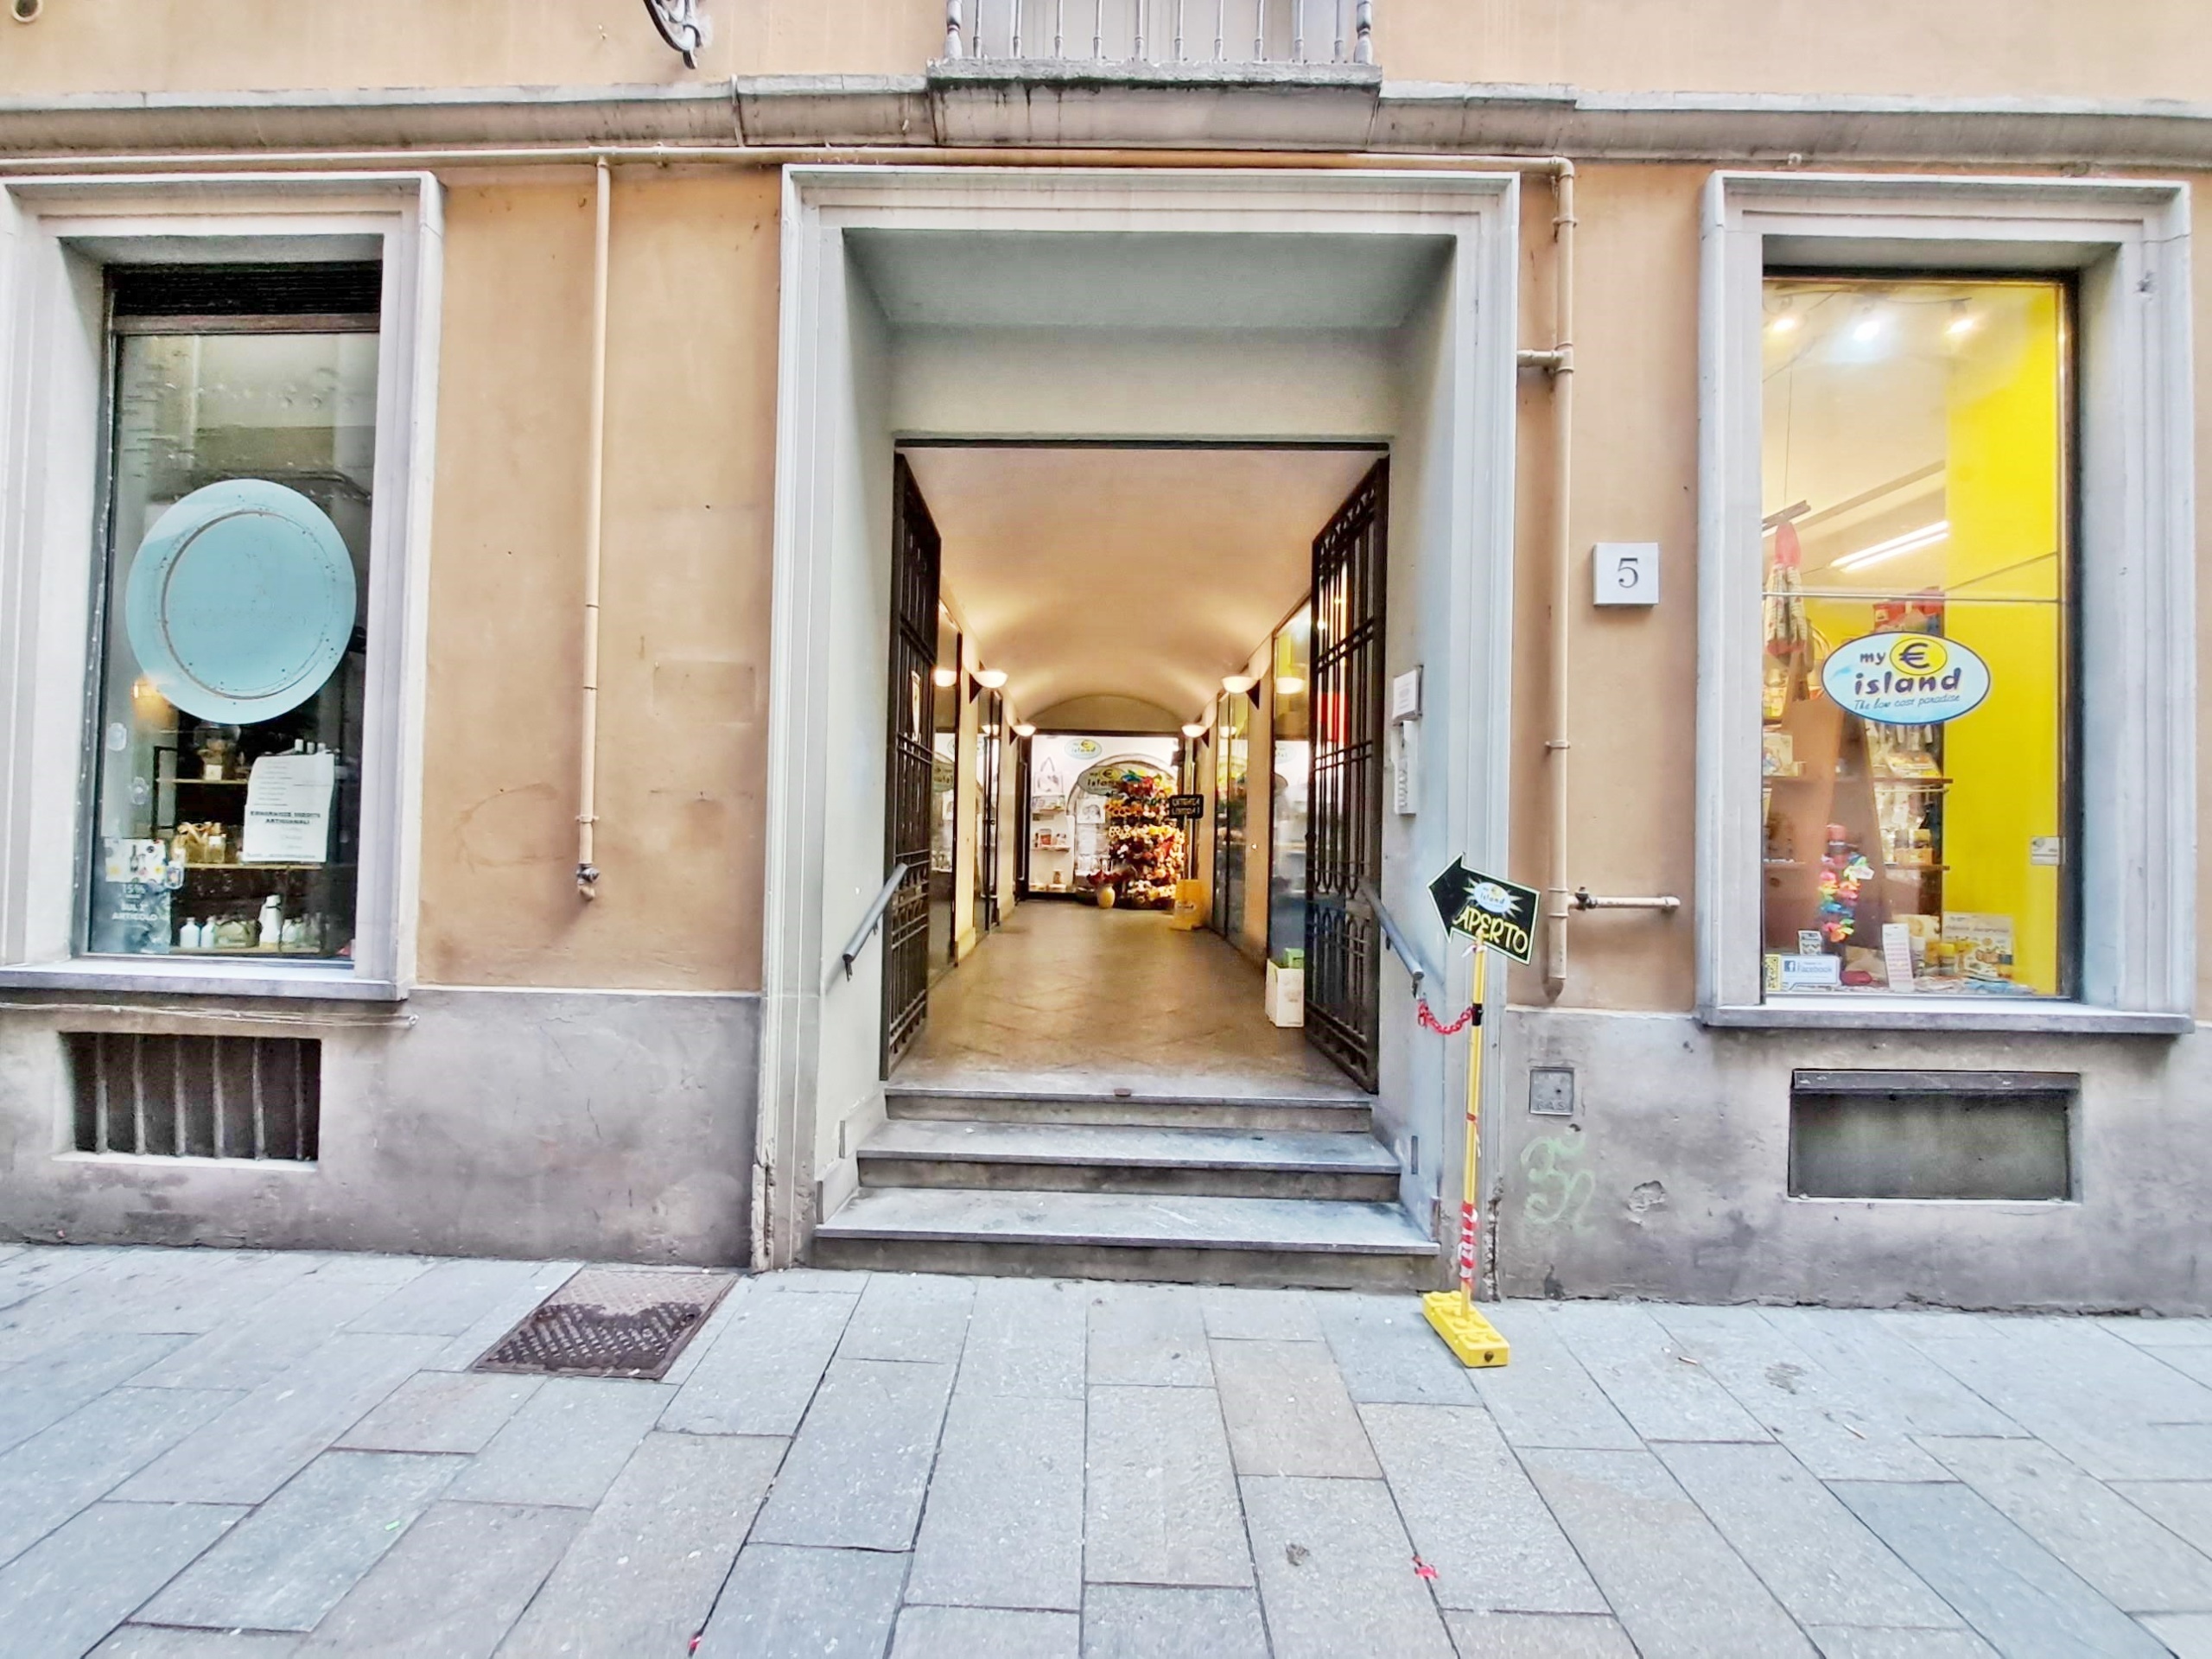 Locale commerciale in affitto in via carlo goldoni 5, Parma